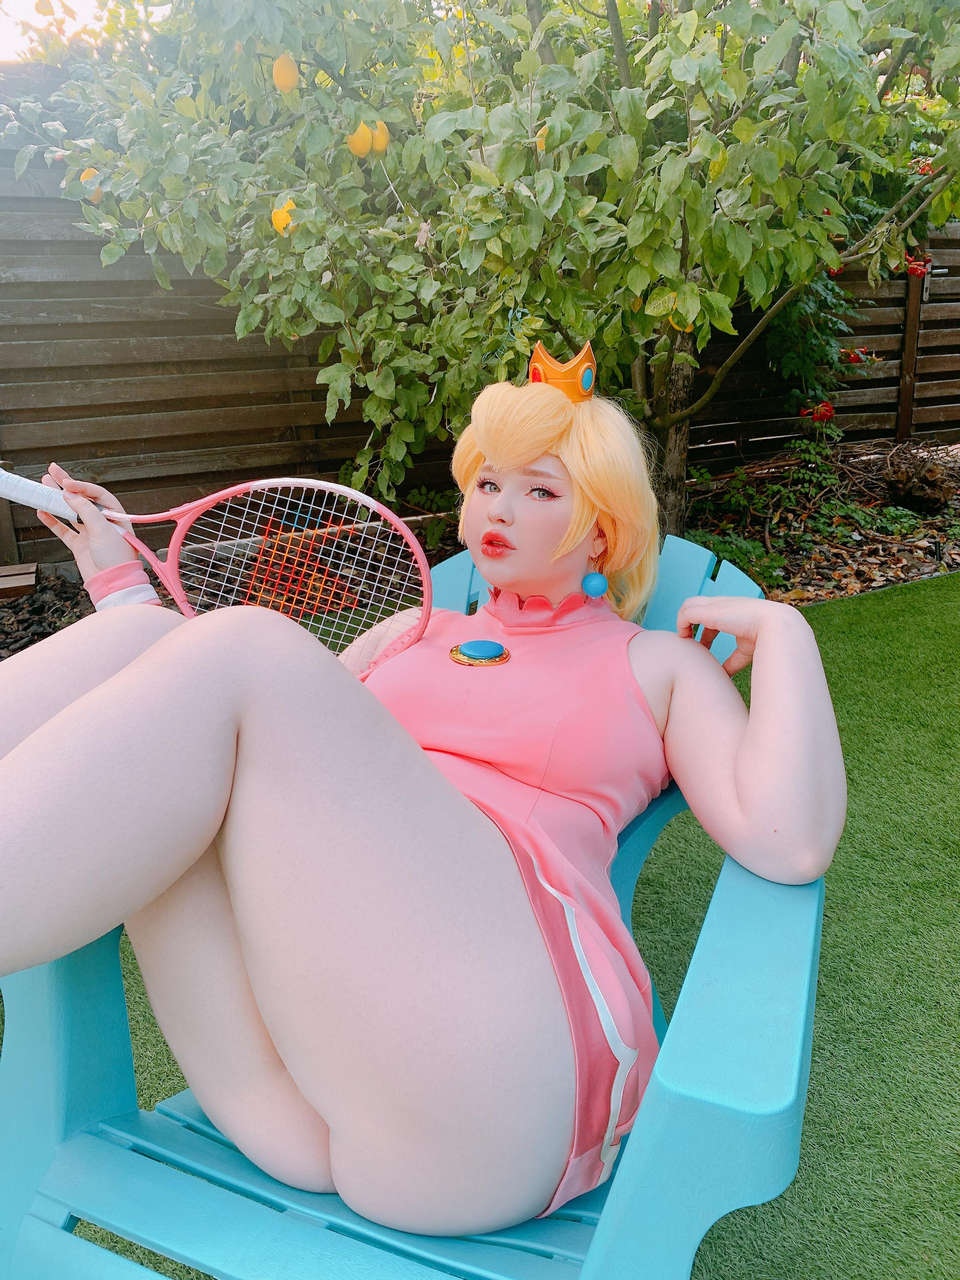 Princess Peach By Venusblessin